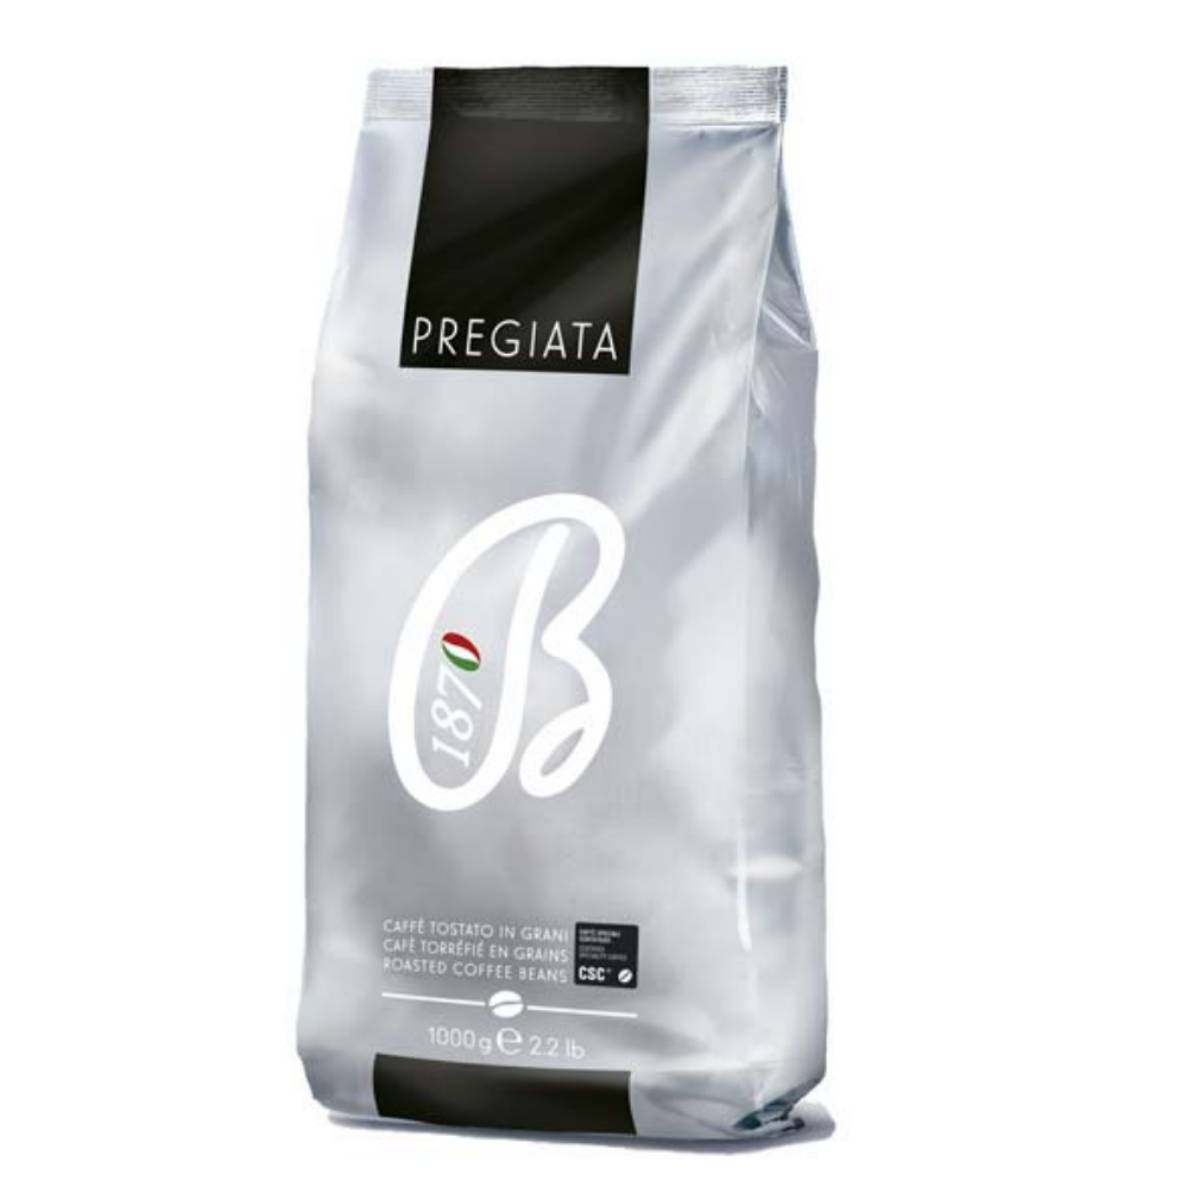 دانه قهوه پریجیاتا باربرا - ۱ کیلوگرم 